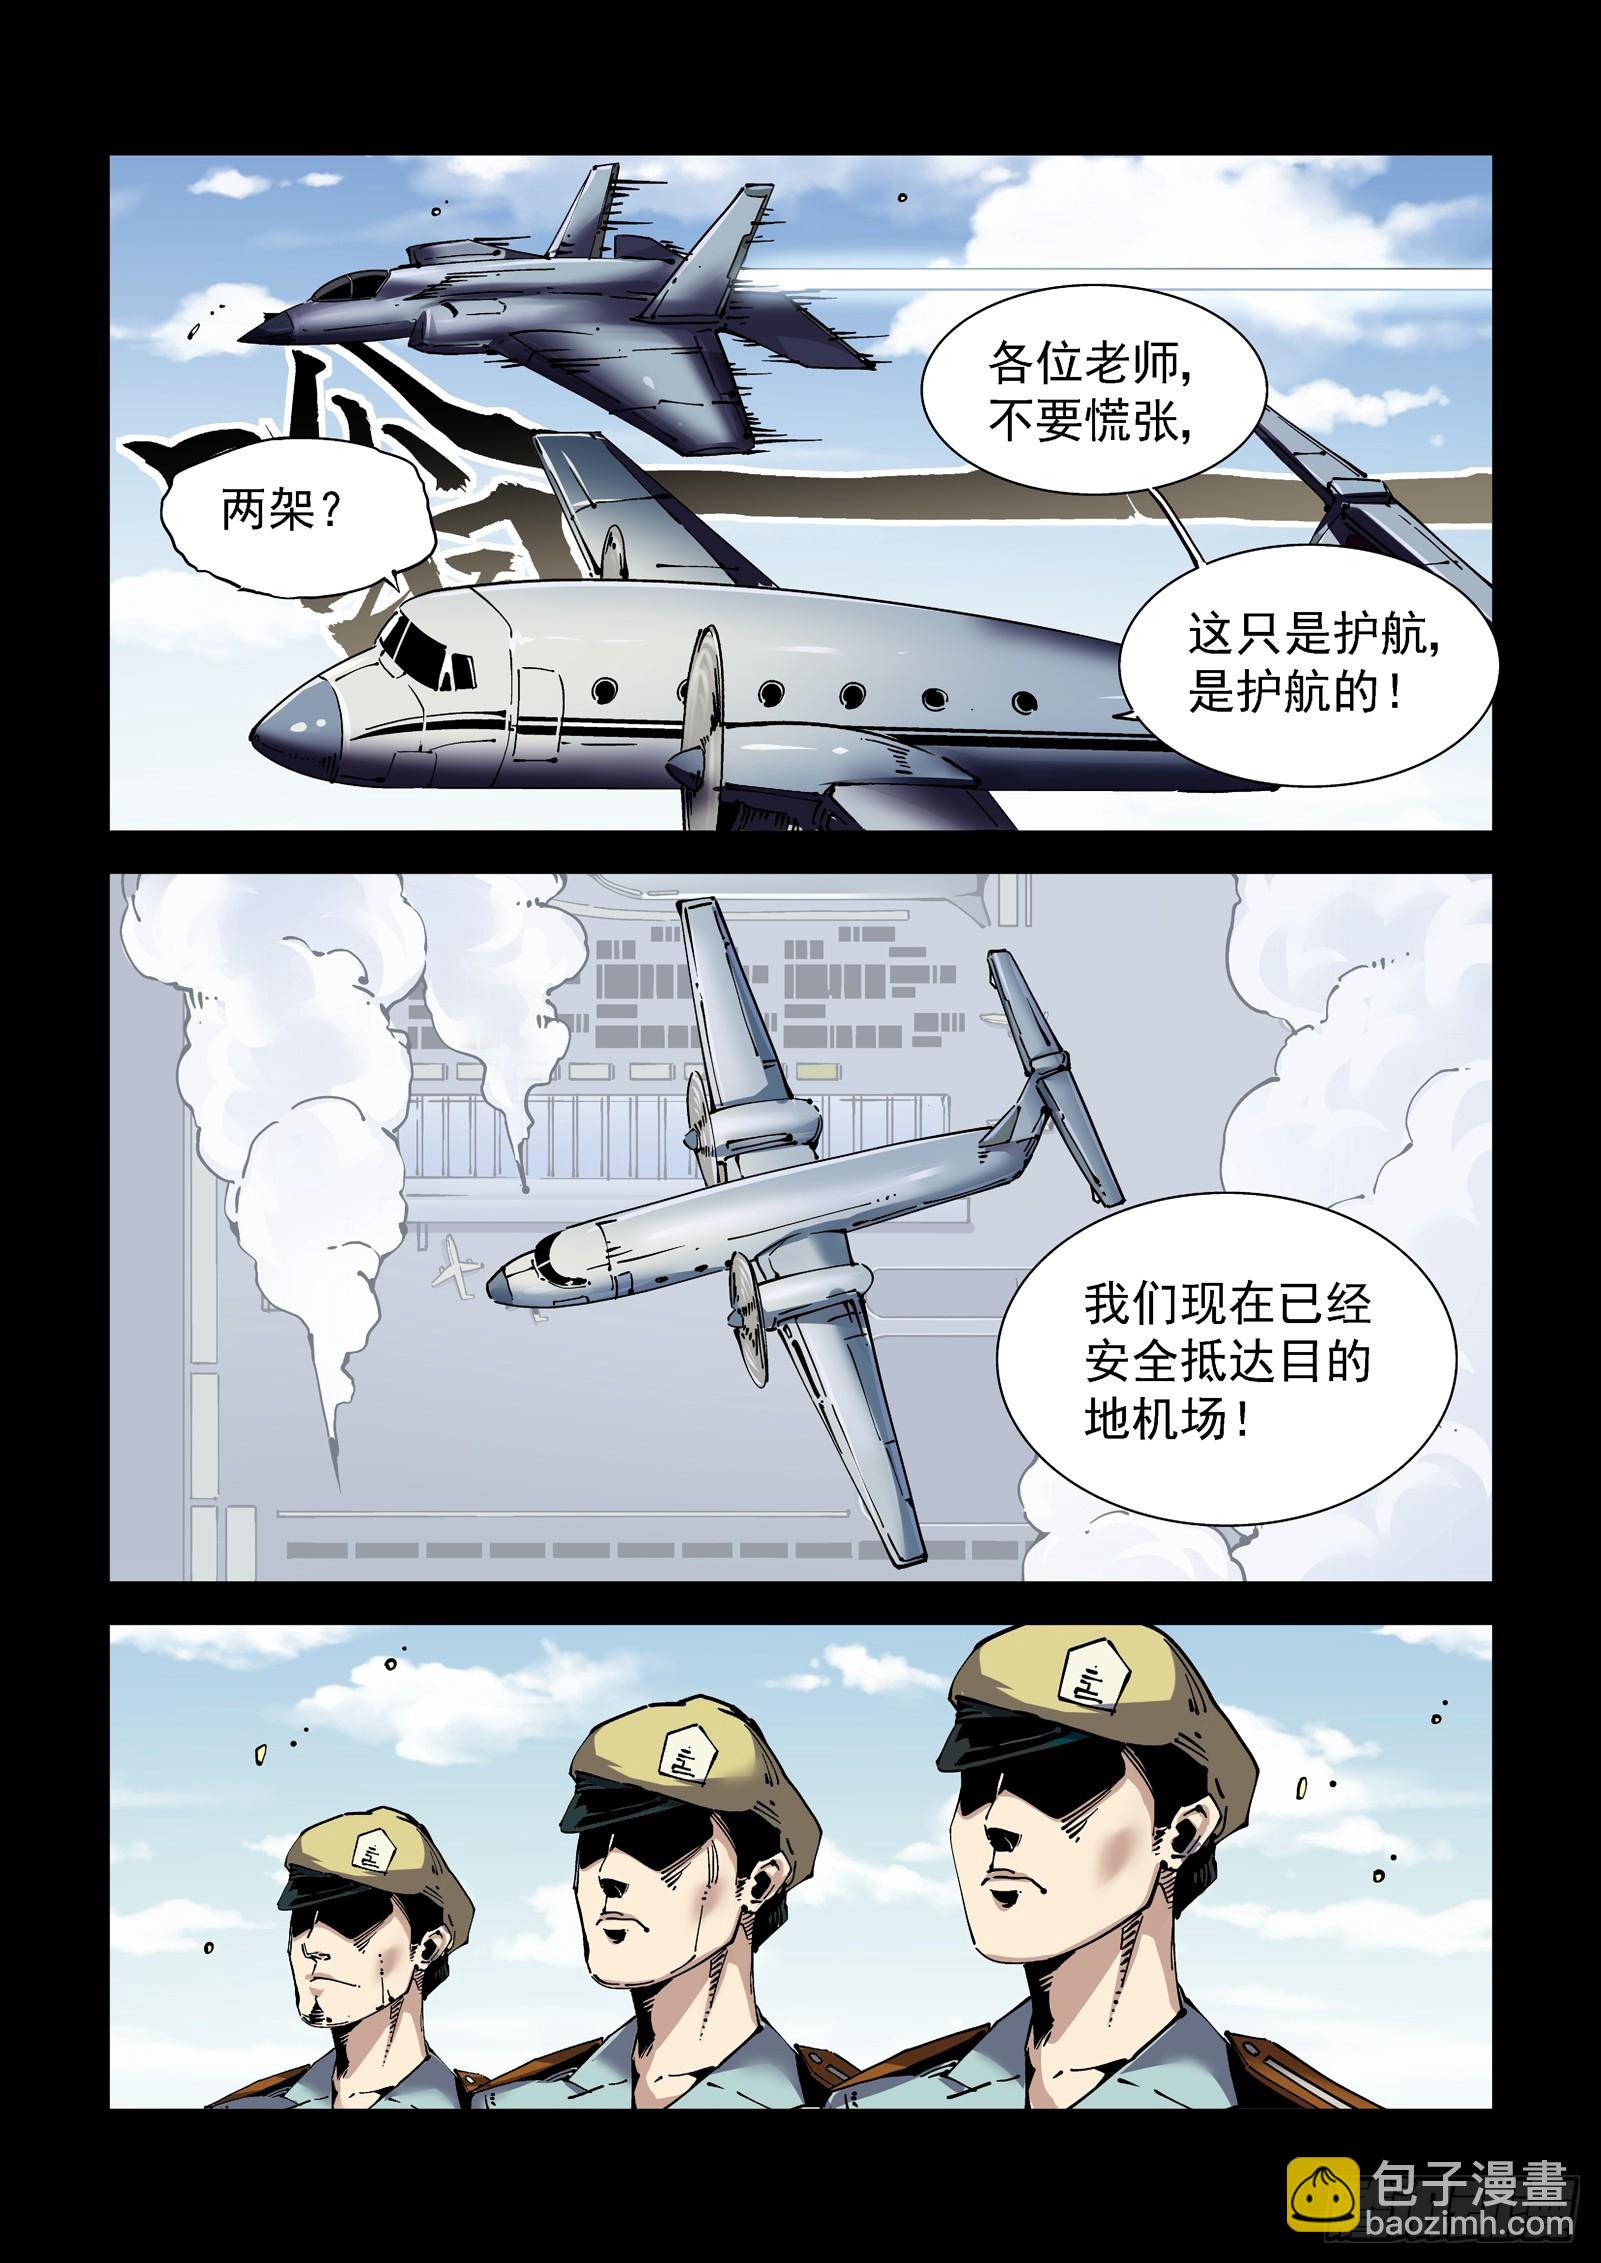 賽博英雄傳 - 083艦隊 - 3